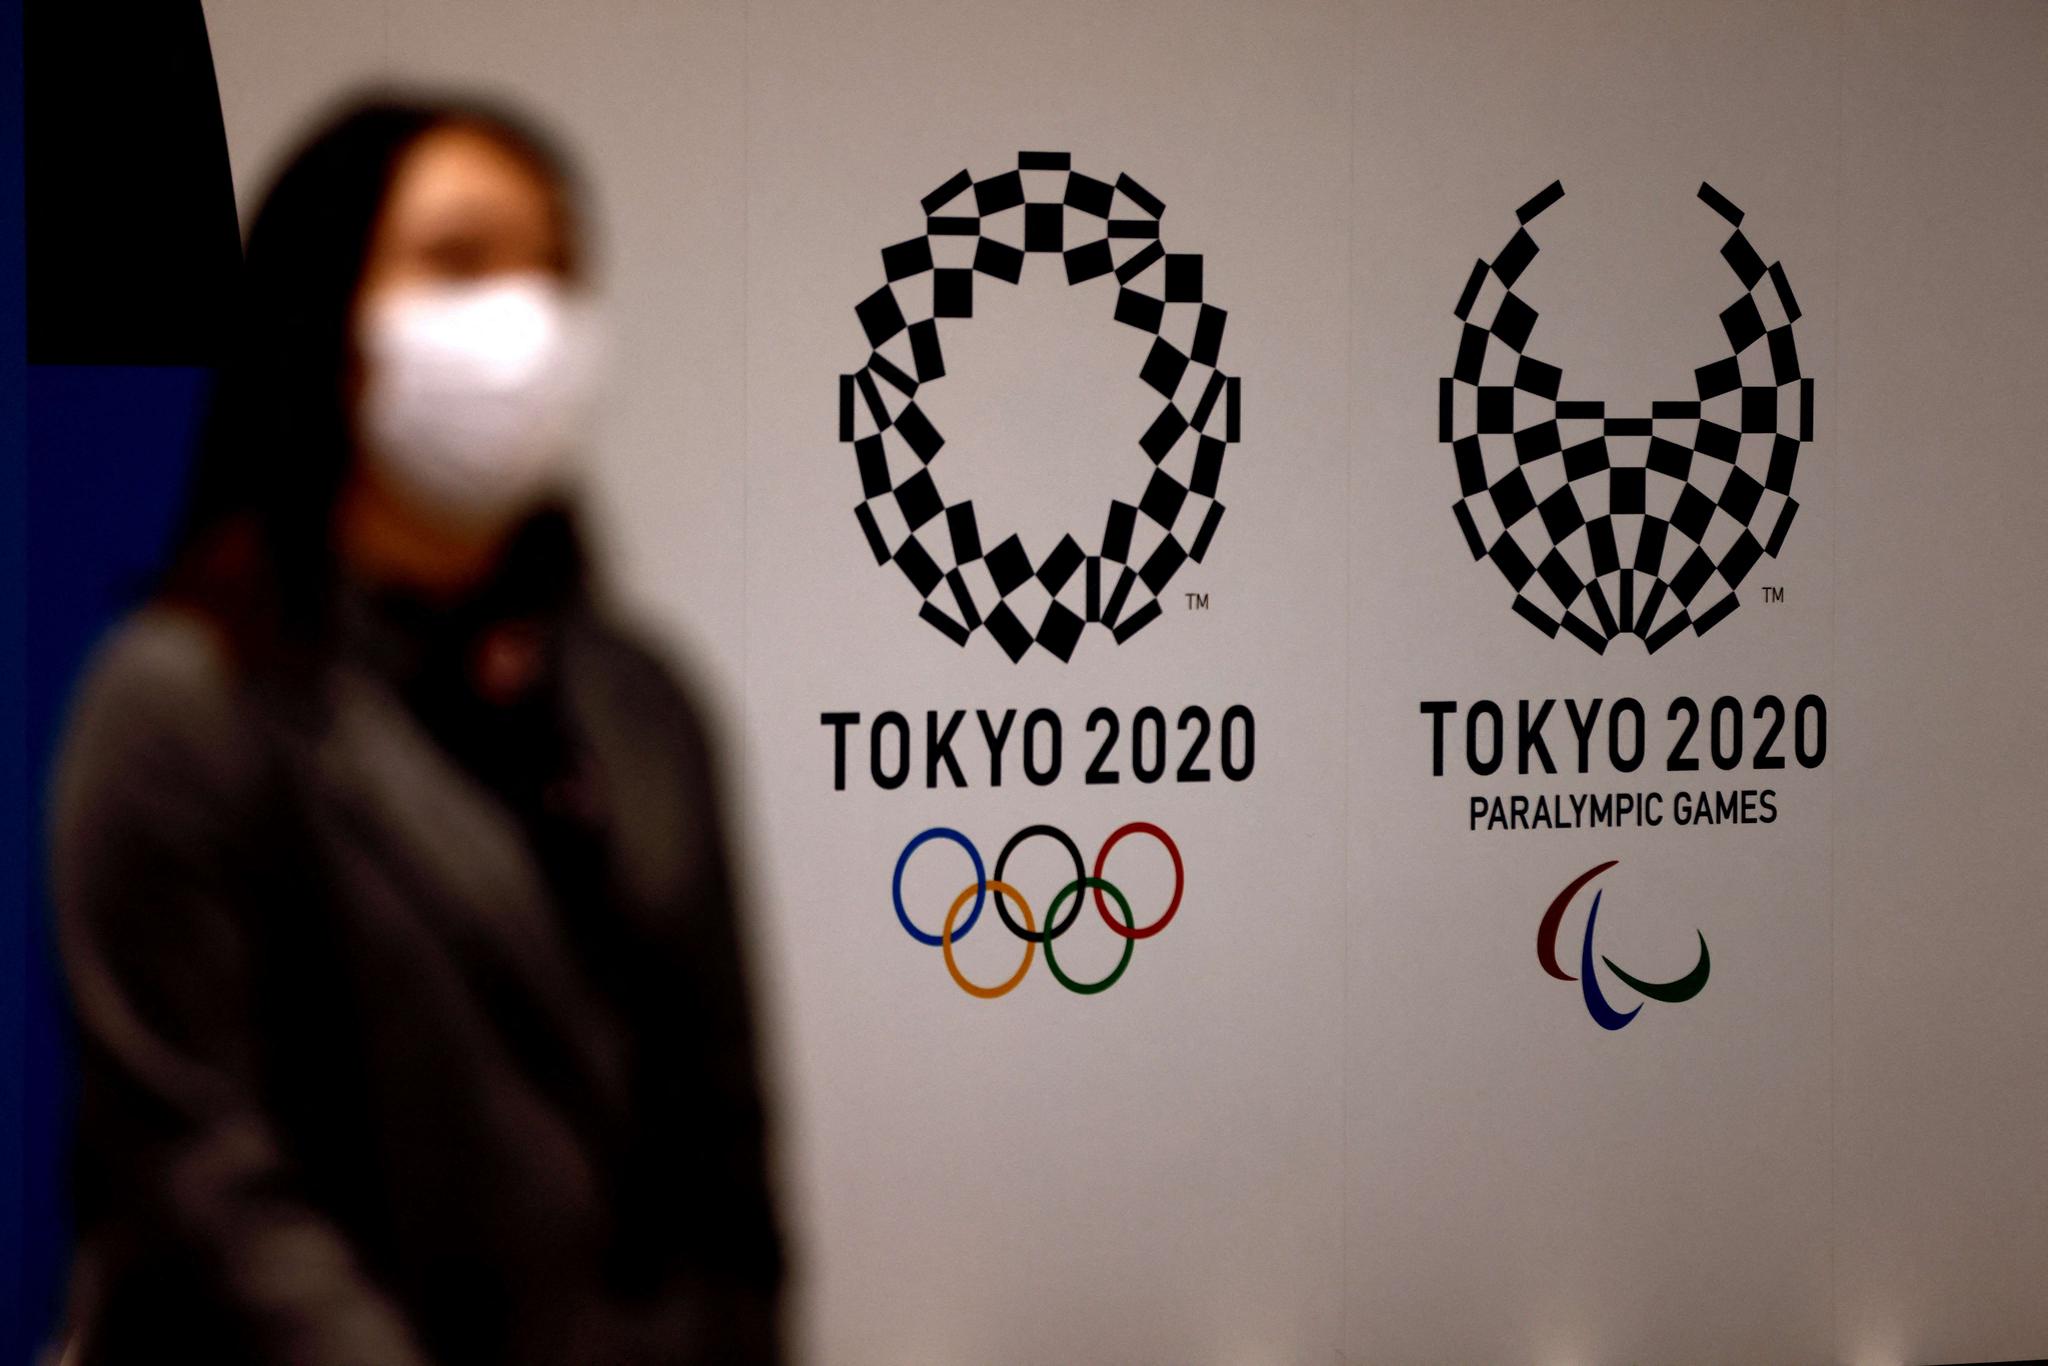 Como uma fala considerada machista detonou uma crise na Olimpíada de Tóquio